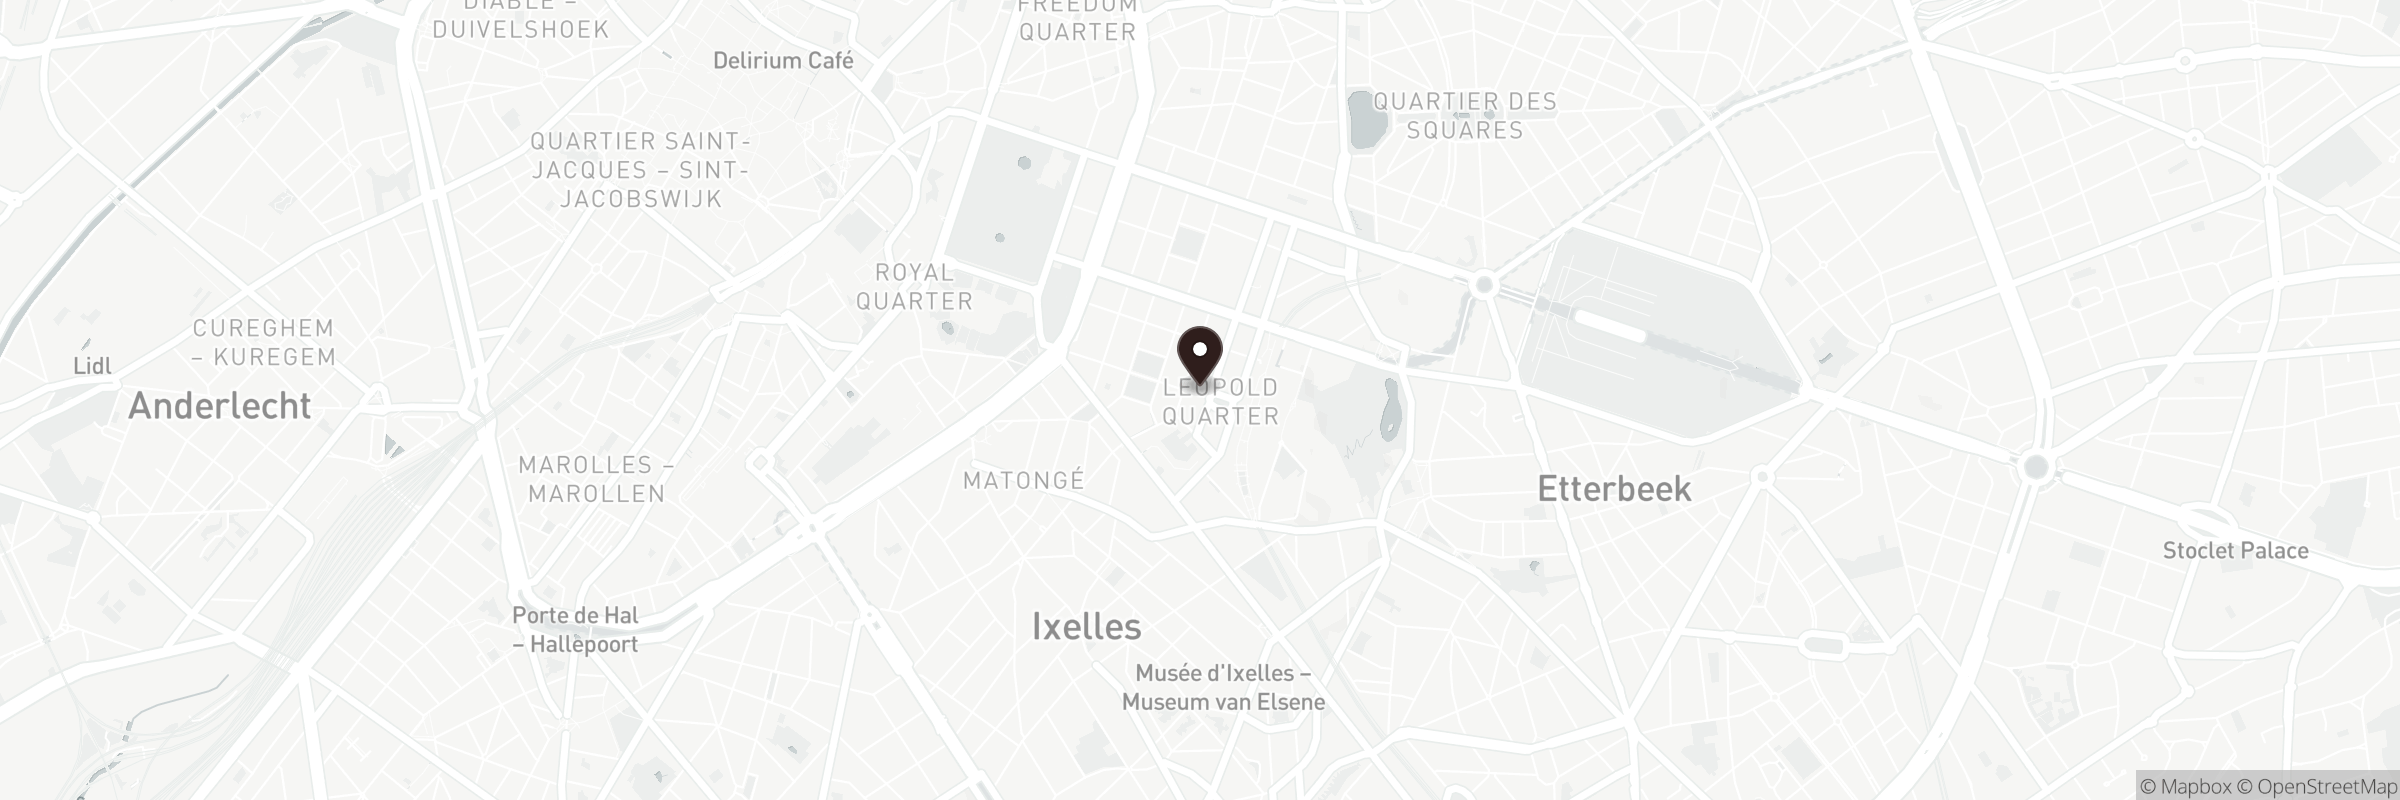 Kaart met het adres van Place du Luxembourg